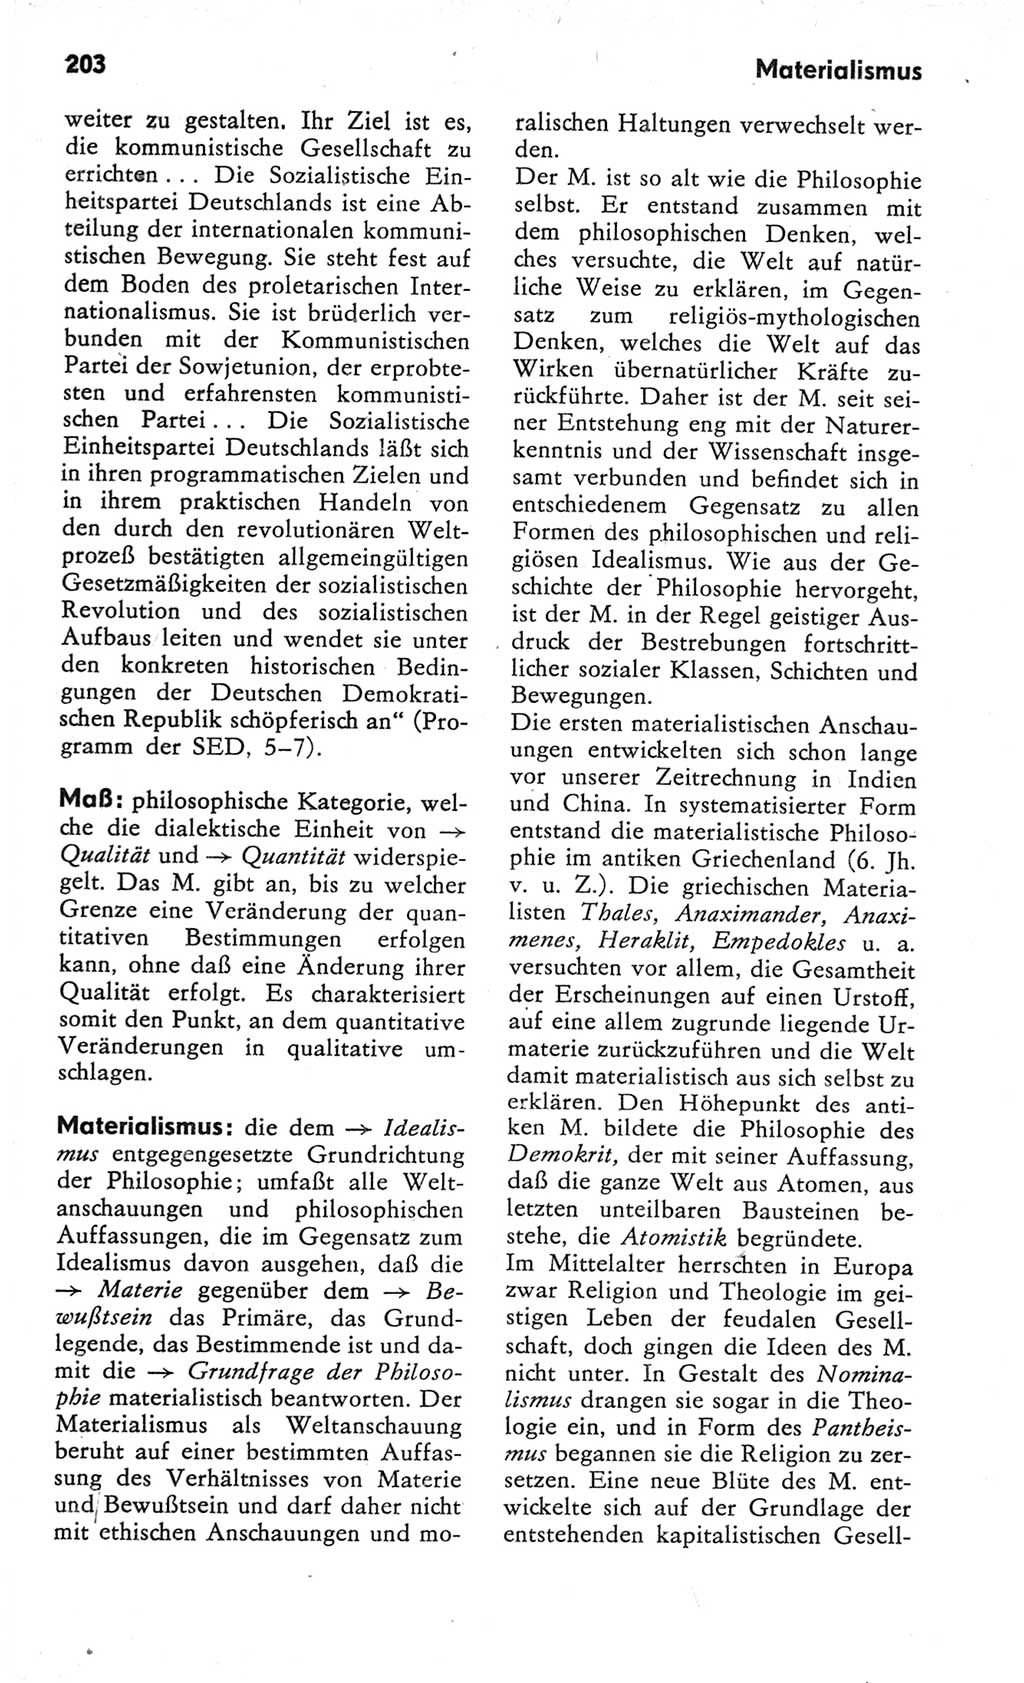 Kleines Wörterbuch der marxistisch-leninistischen Philosophie [Deutsche Demokratische Republik (DDR)] 1982, Seite 203 (Kl. Wb. ML Phil. DDR 1982, S. 203)